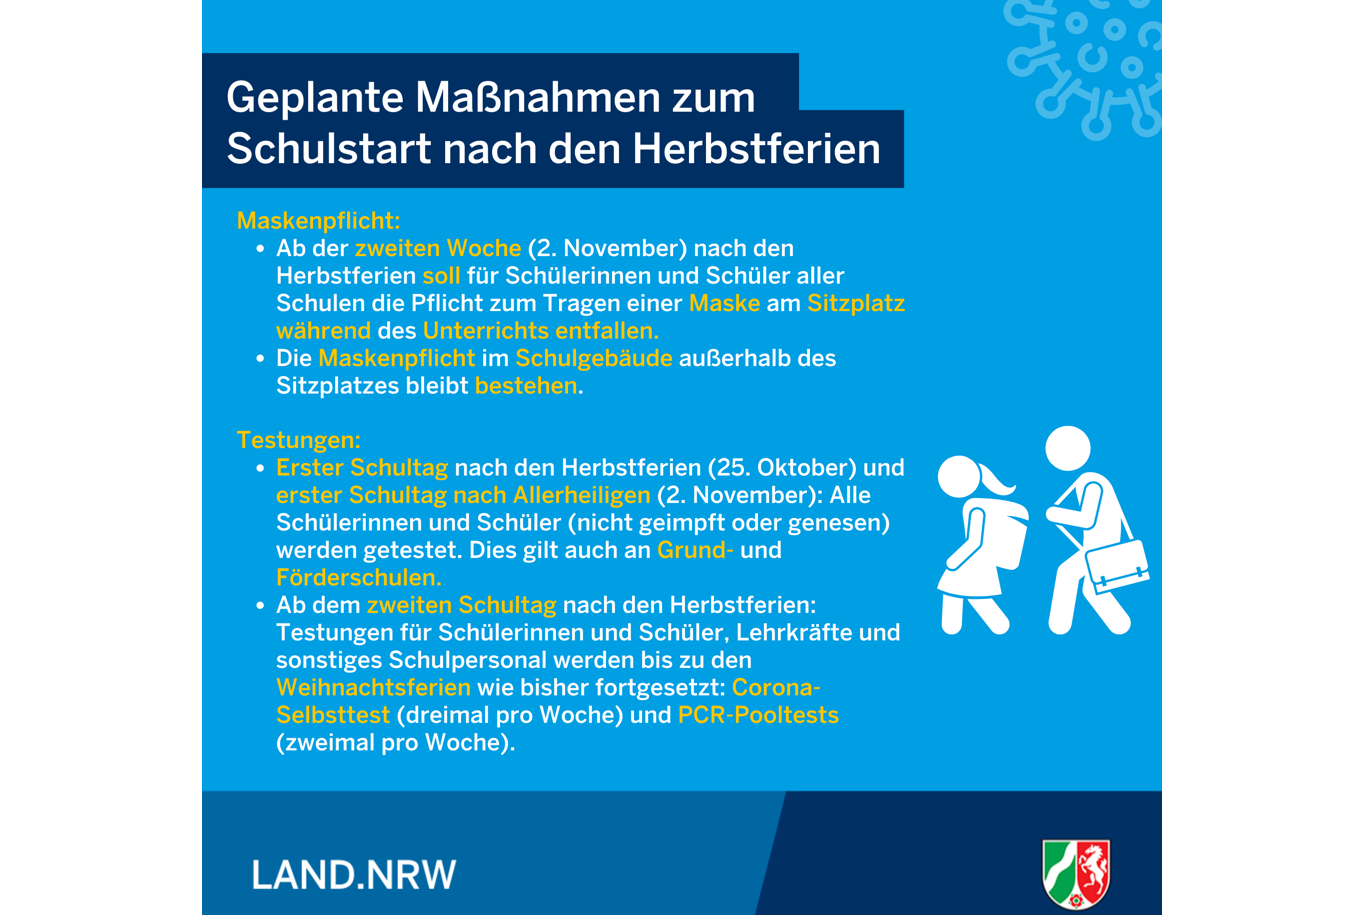 Weitere Schritte nach den Ferien hin zu mehr Normalität in den NRW-Schulen 